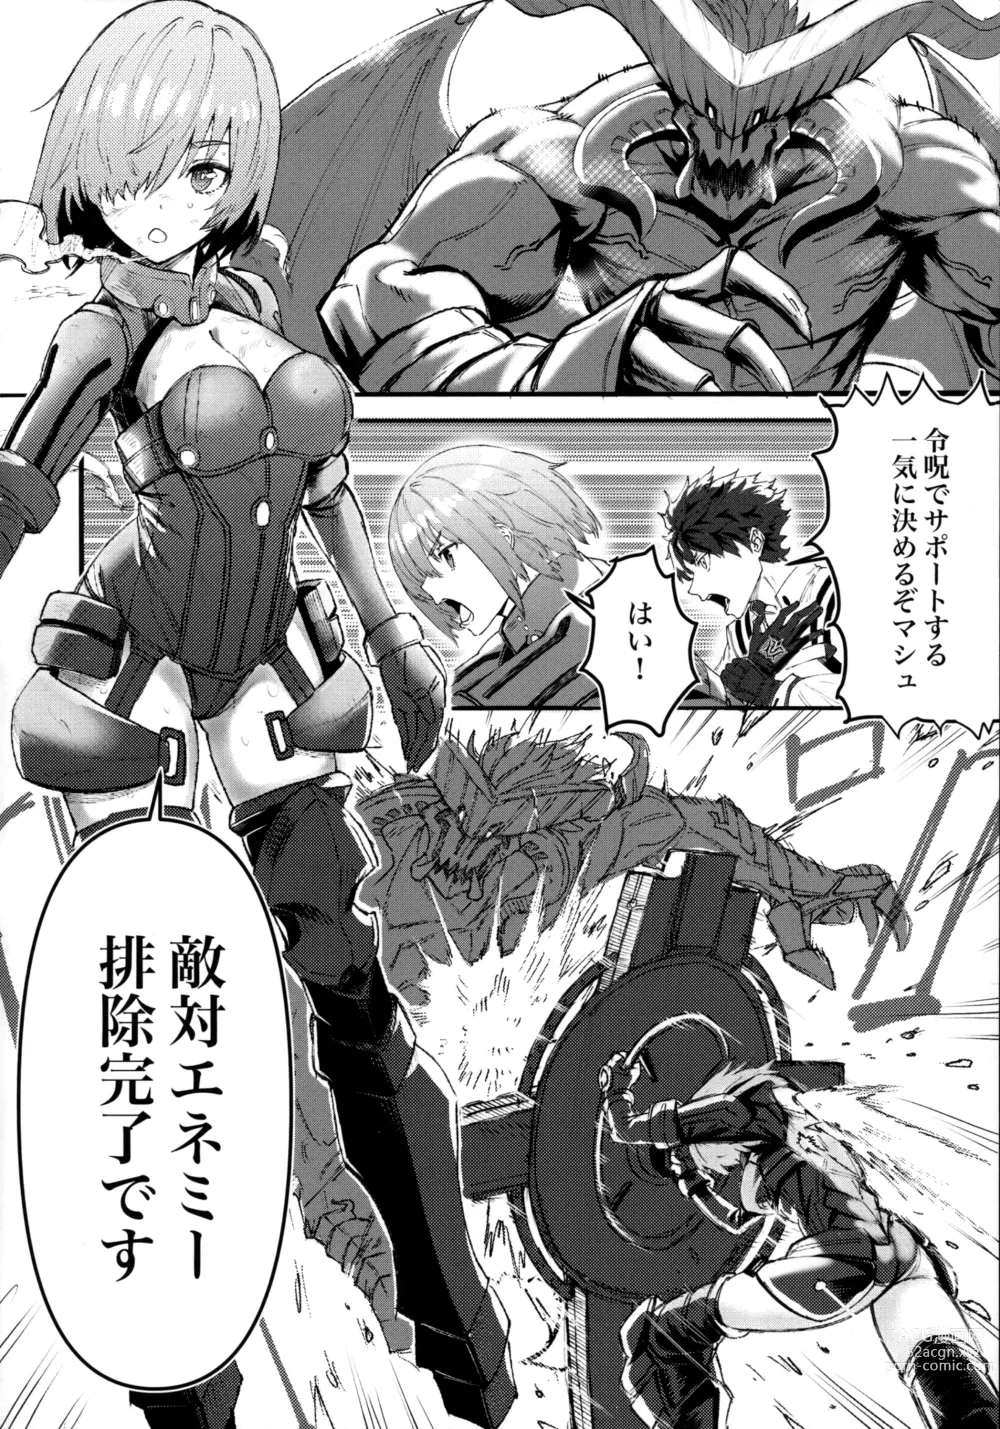 Page 3 of doujinshi Senpai no Tame ni NTR Mash!